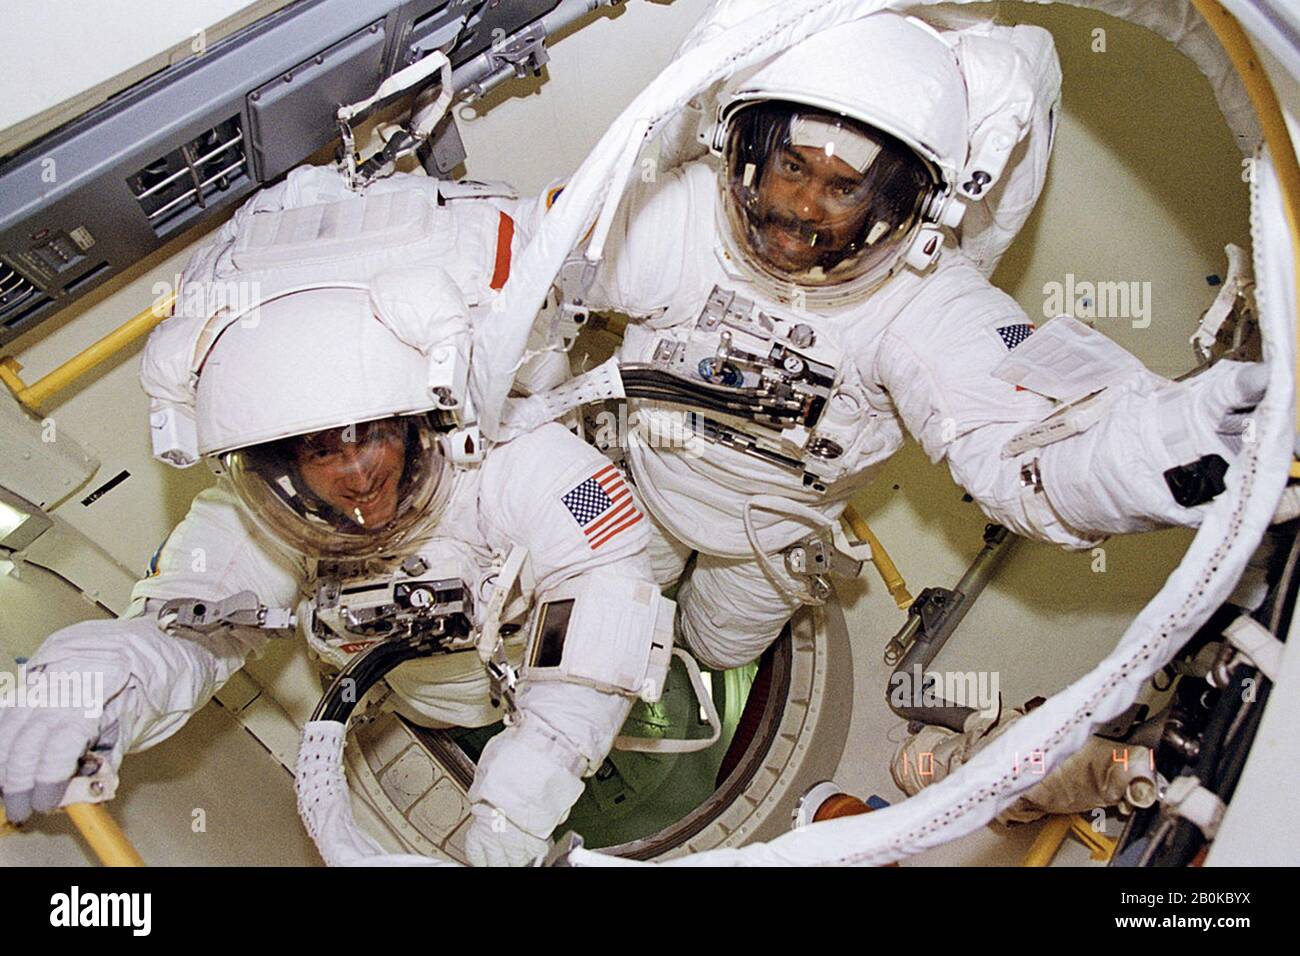 Washington, Vereinigte Staaten. Februar 2020. Vor 25 Jahren, im Februar 1995, wurde Astronaut Bernard Harris (rechts) der erste afroamerikanische Amerikaner, der einen Raumflug durchführte. In diesem Bild bereiten er und der andere STS-63-Astronaut Michael Foale vor, die Luftschleuse der Raumfähre Discovery zu verlassen, um ihren Raumflug zu beginnen. Das Paar würde neue Isolierung testen, um Astronauten vor der Kälte zu schützen, aber die Mission Control Schnitt ihren Raumflug kurz, nachdem die Männer berichteten, dass sie sich in ihren Anzügen sehr kalt fühlten. NASA/UPI Credit: UPI/Alamy Live News Stockfoto